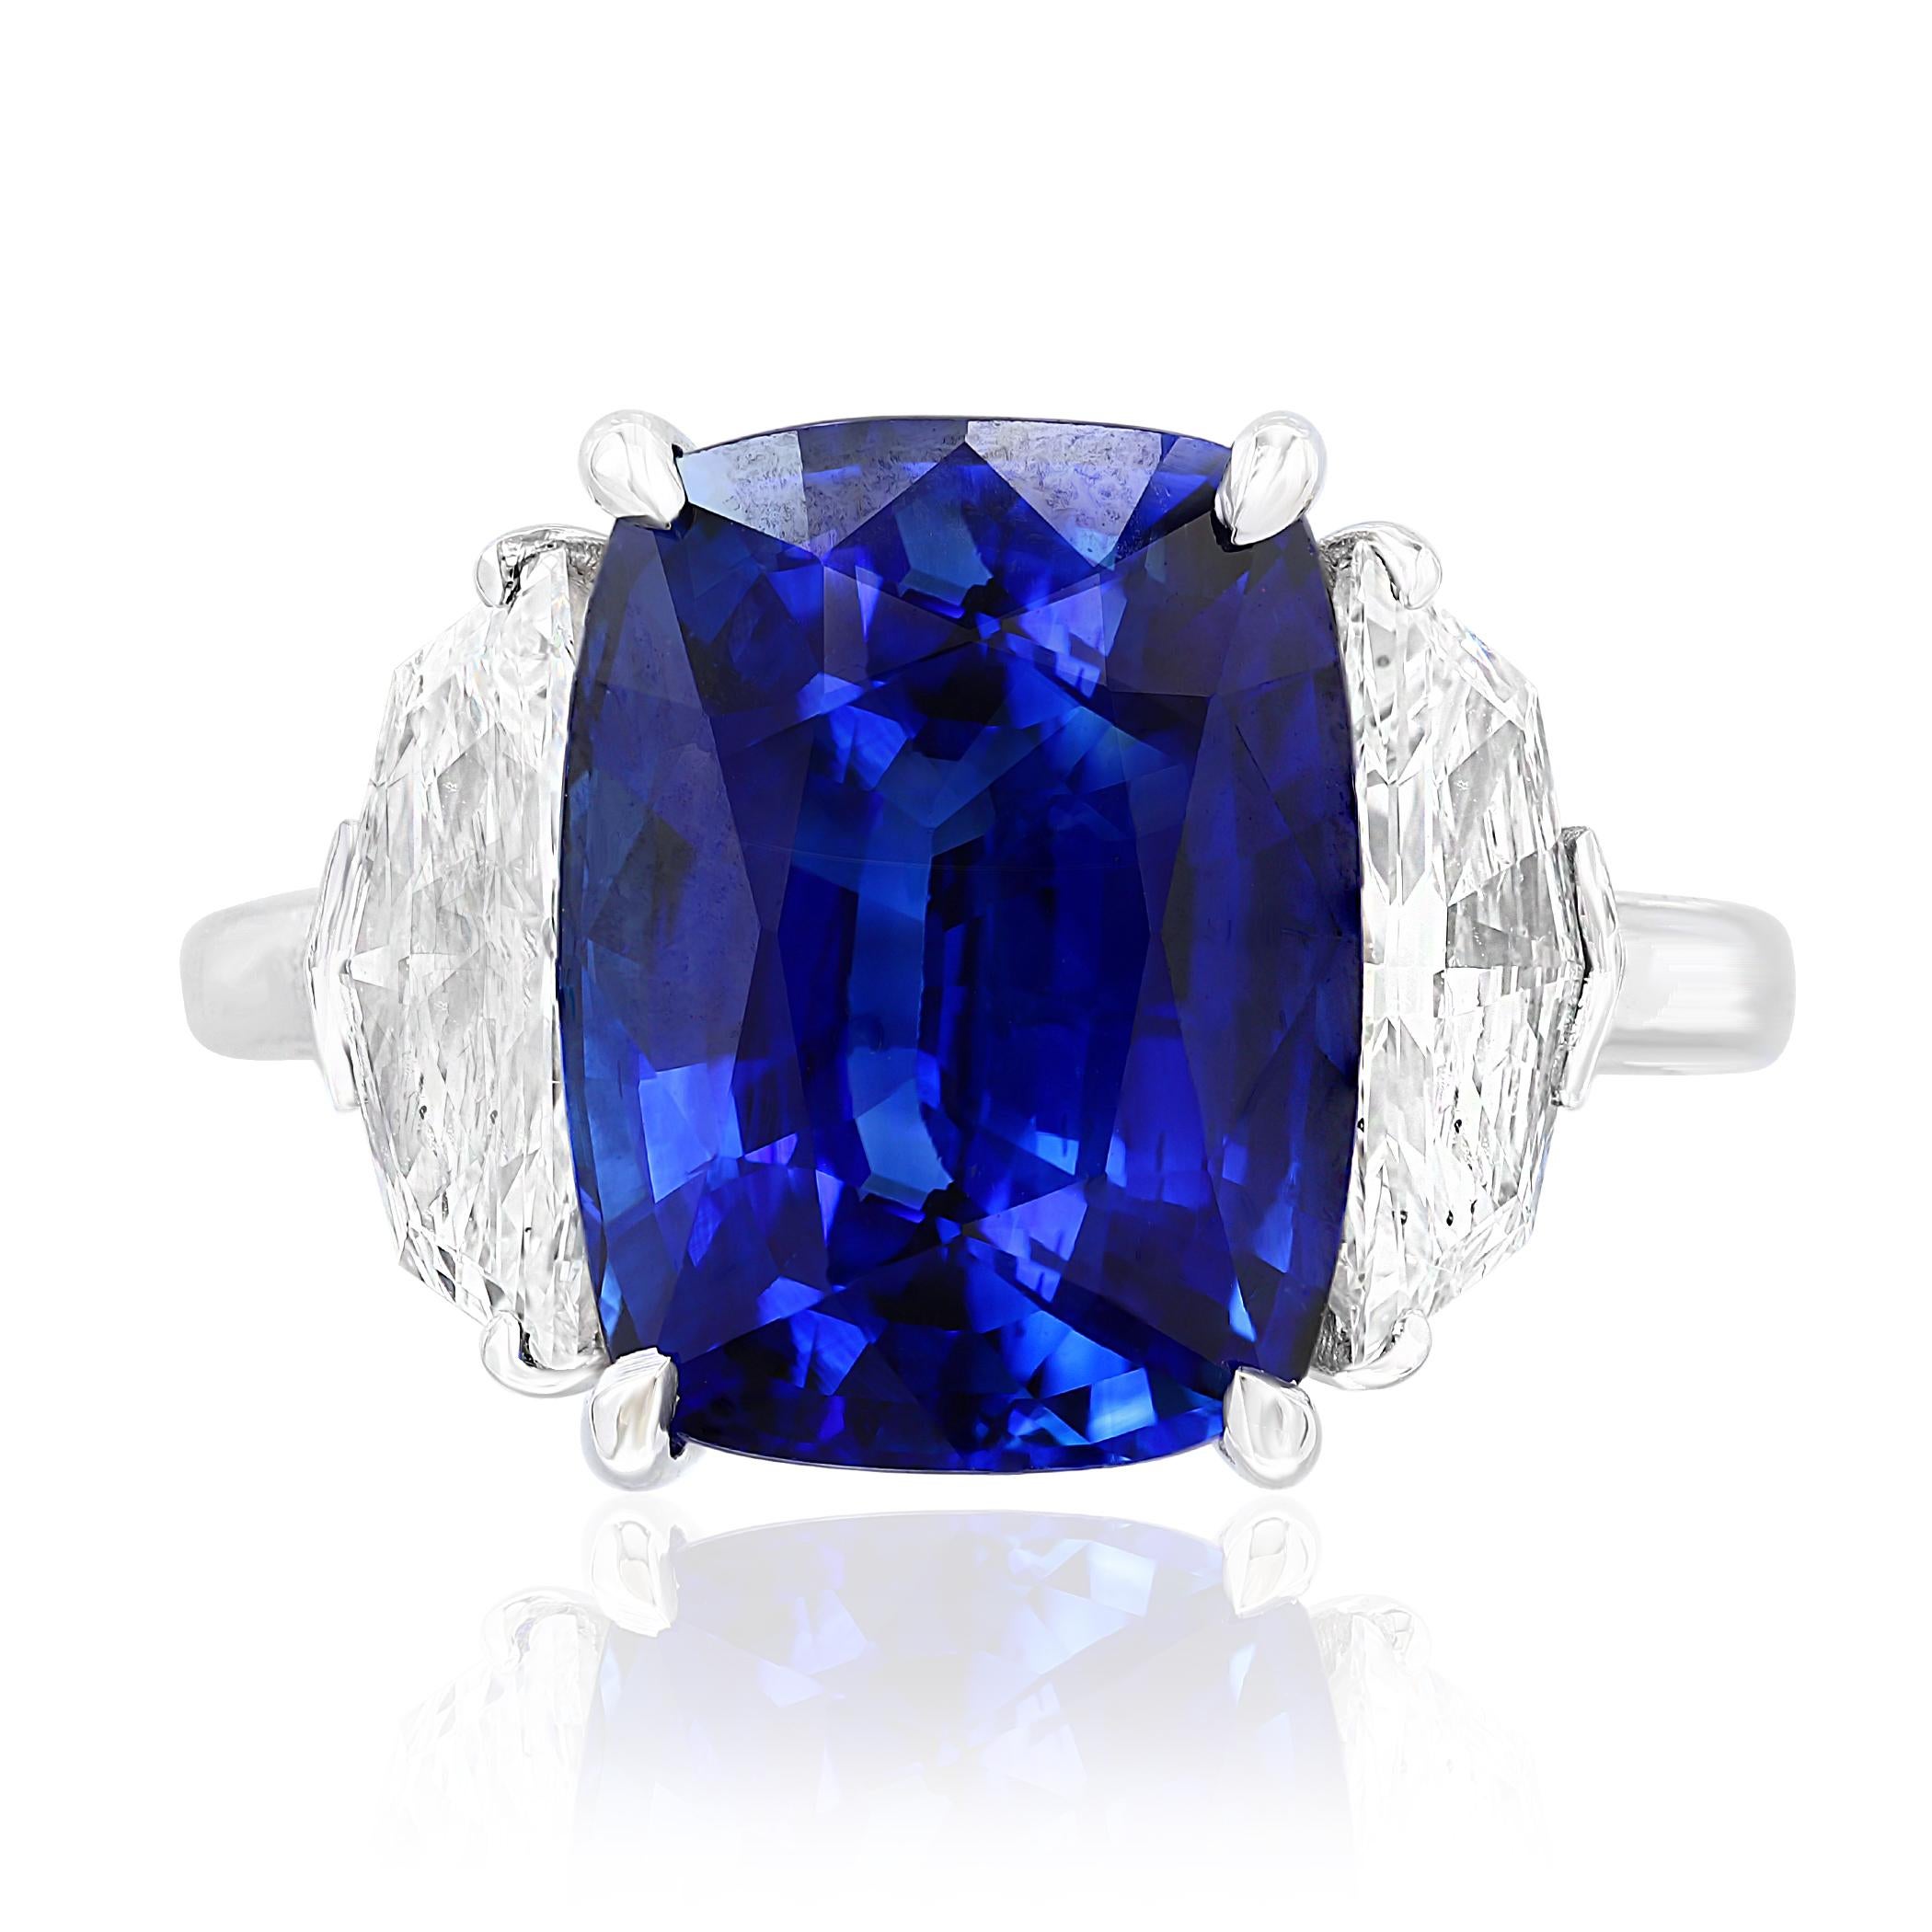 Präsentiert einen blauen Saphir im Kissenschliff mit einem Gewicht von 6,54 Karat, flankiert von zwei Halbmonddiamanten im Brillantschliff mit einem Gesamtgewicht von 1,24 Karat. Elegant eingefasst in eine polierte Platinkomposition.